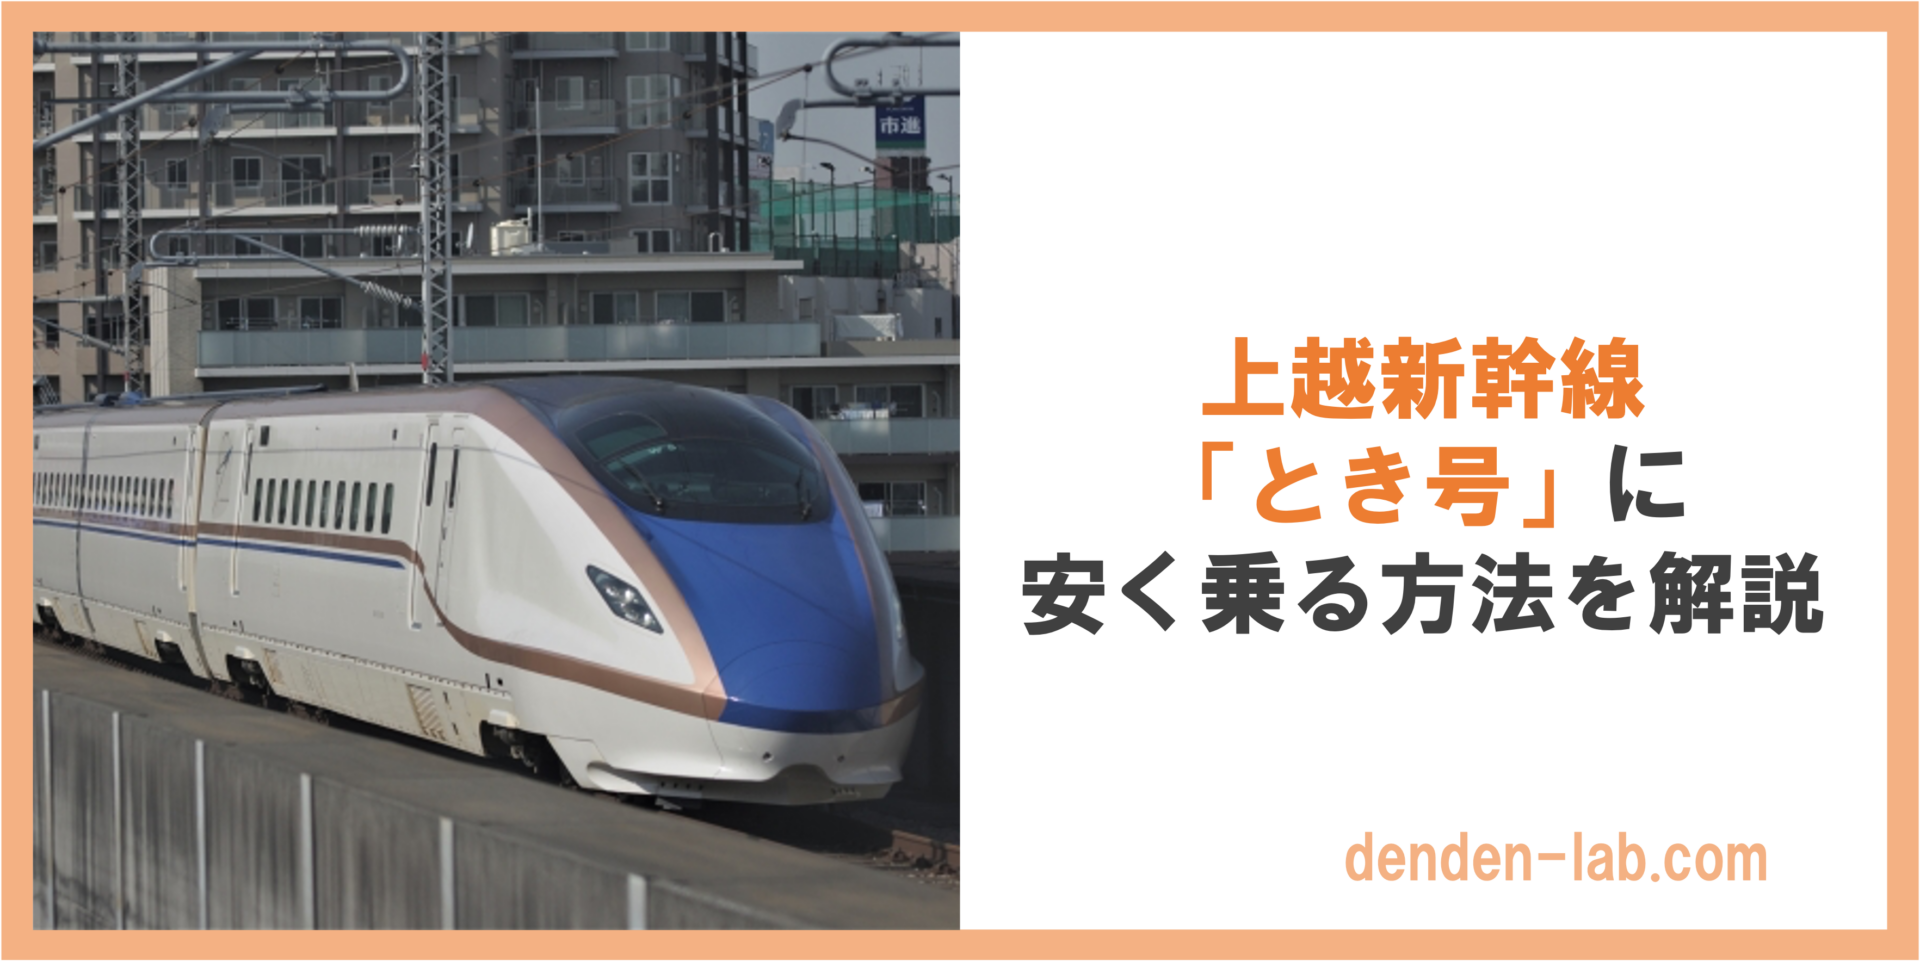 上越新幹線 「とき号」に 安く乗る方法を解説